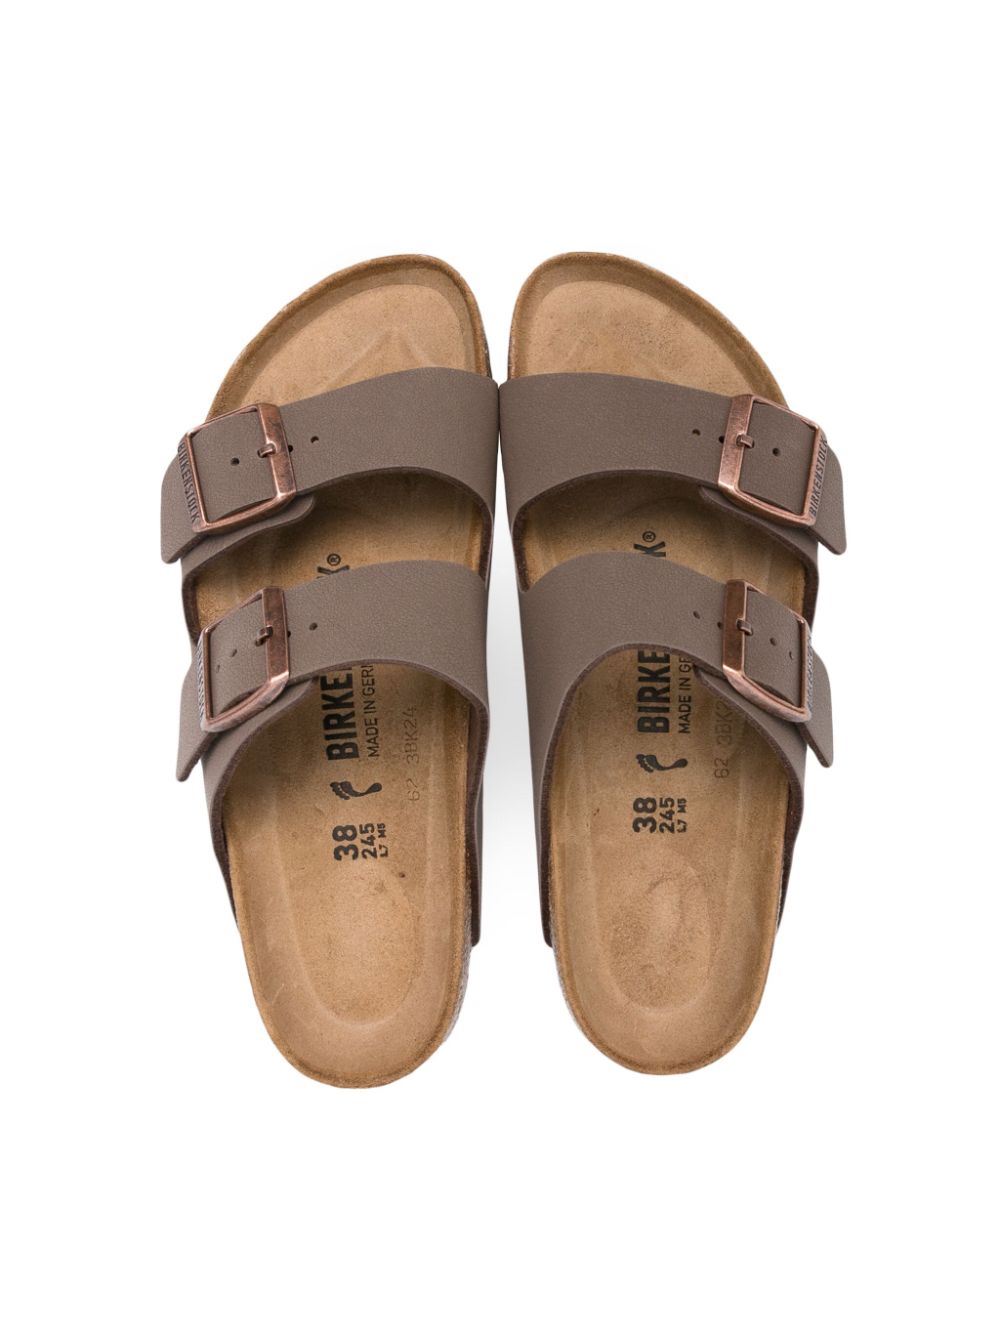 Shop Birkenstock Arizona Leather Sandals In Brown